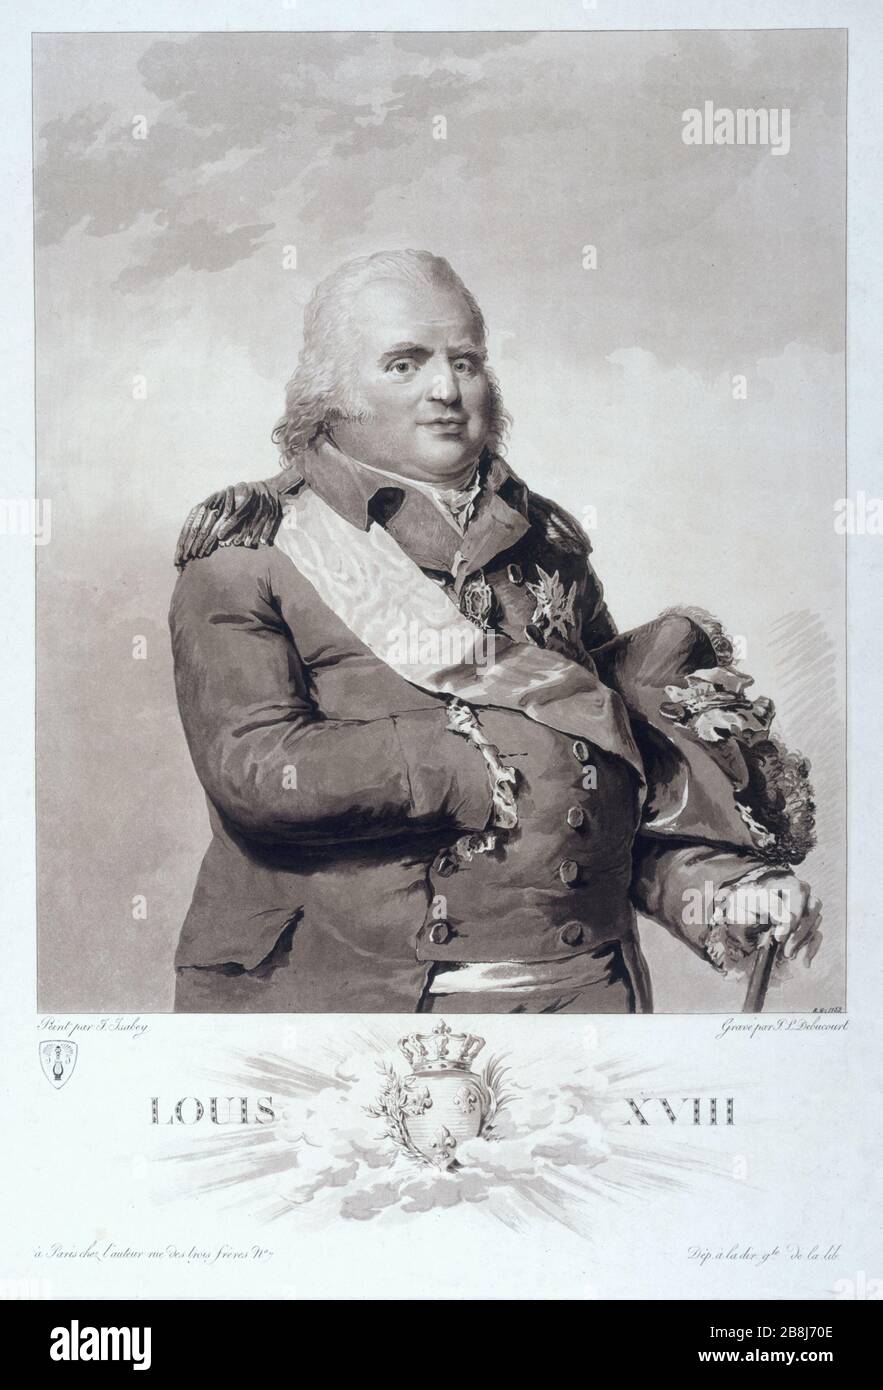 Louis XVIII Philibert-Louis Debucourt (1755-1832) d'après Jean-Baptiste Isabey (1767-1855). 'Louis XVIII' (1755-1824). Gravure (aquatinte),1814. Paris, musée Carnavalet. Stock Photo